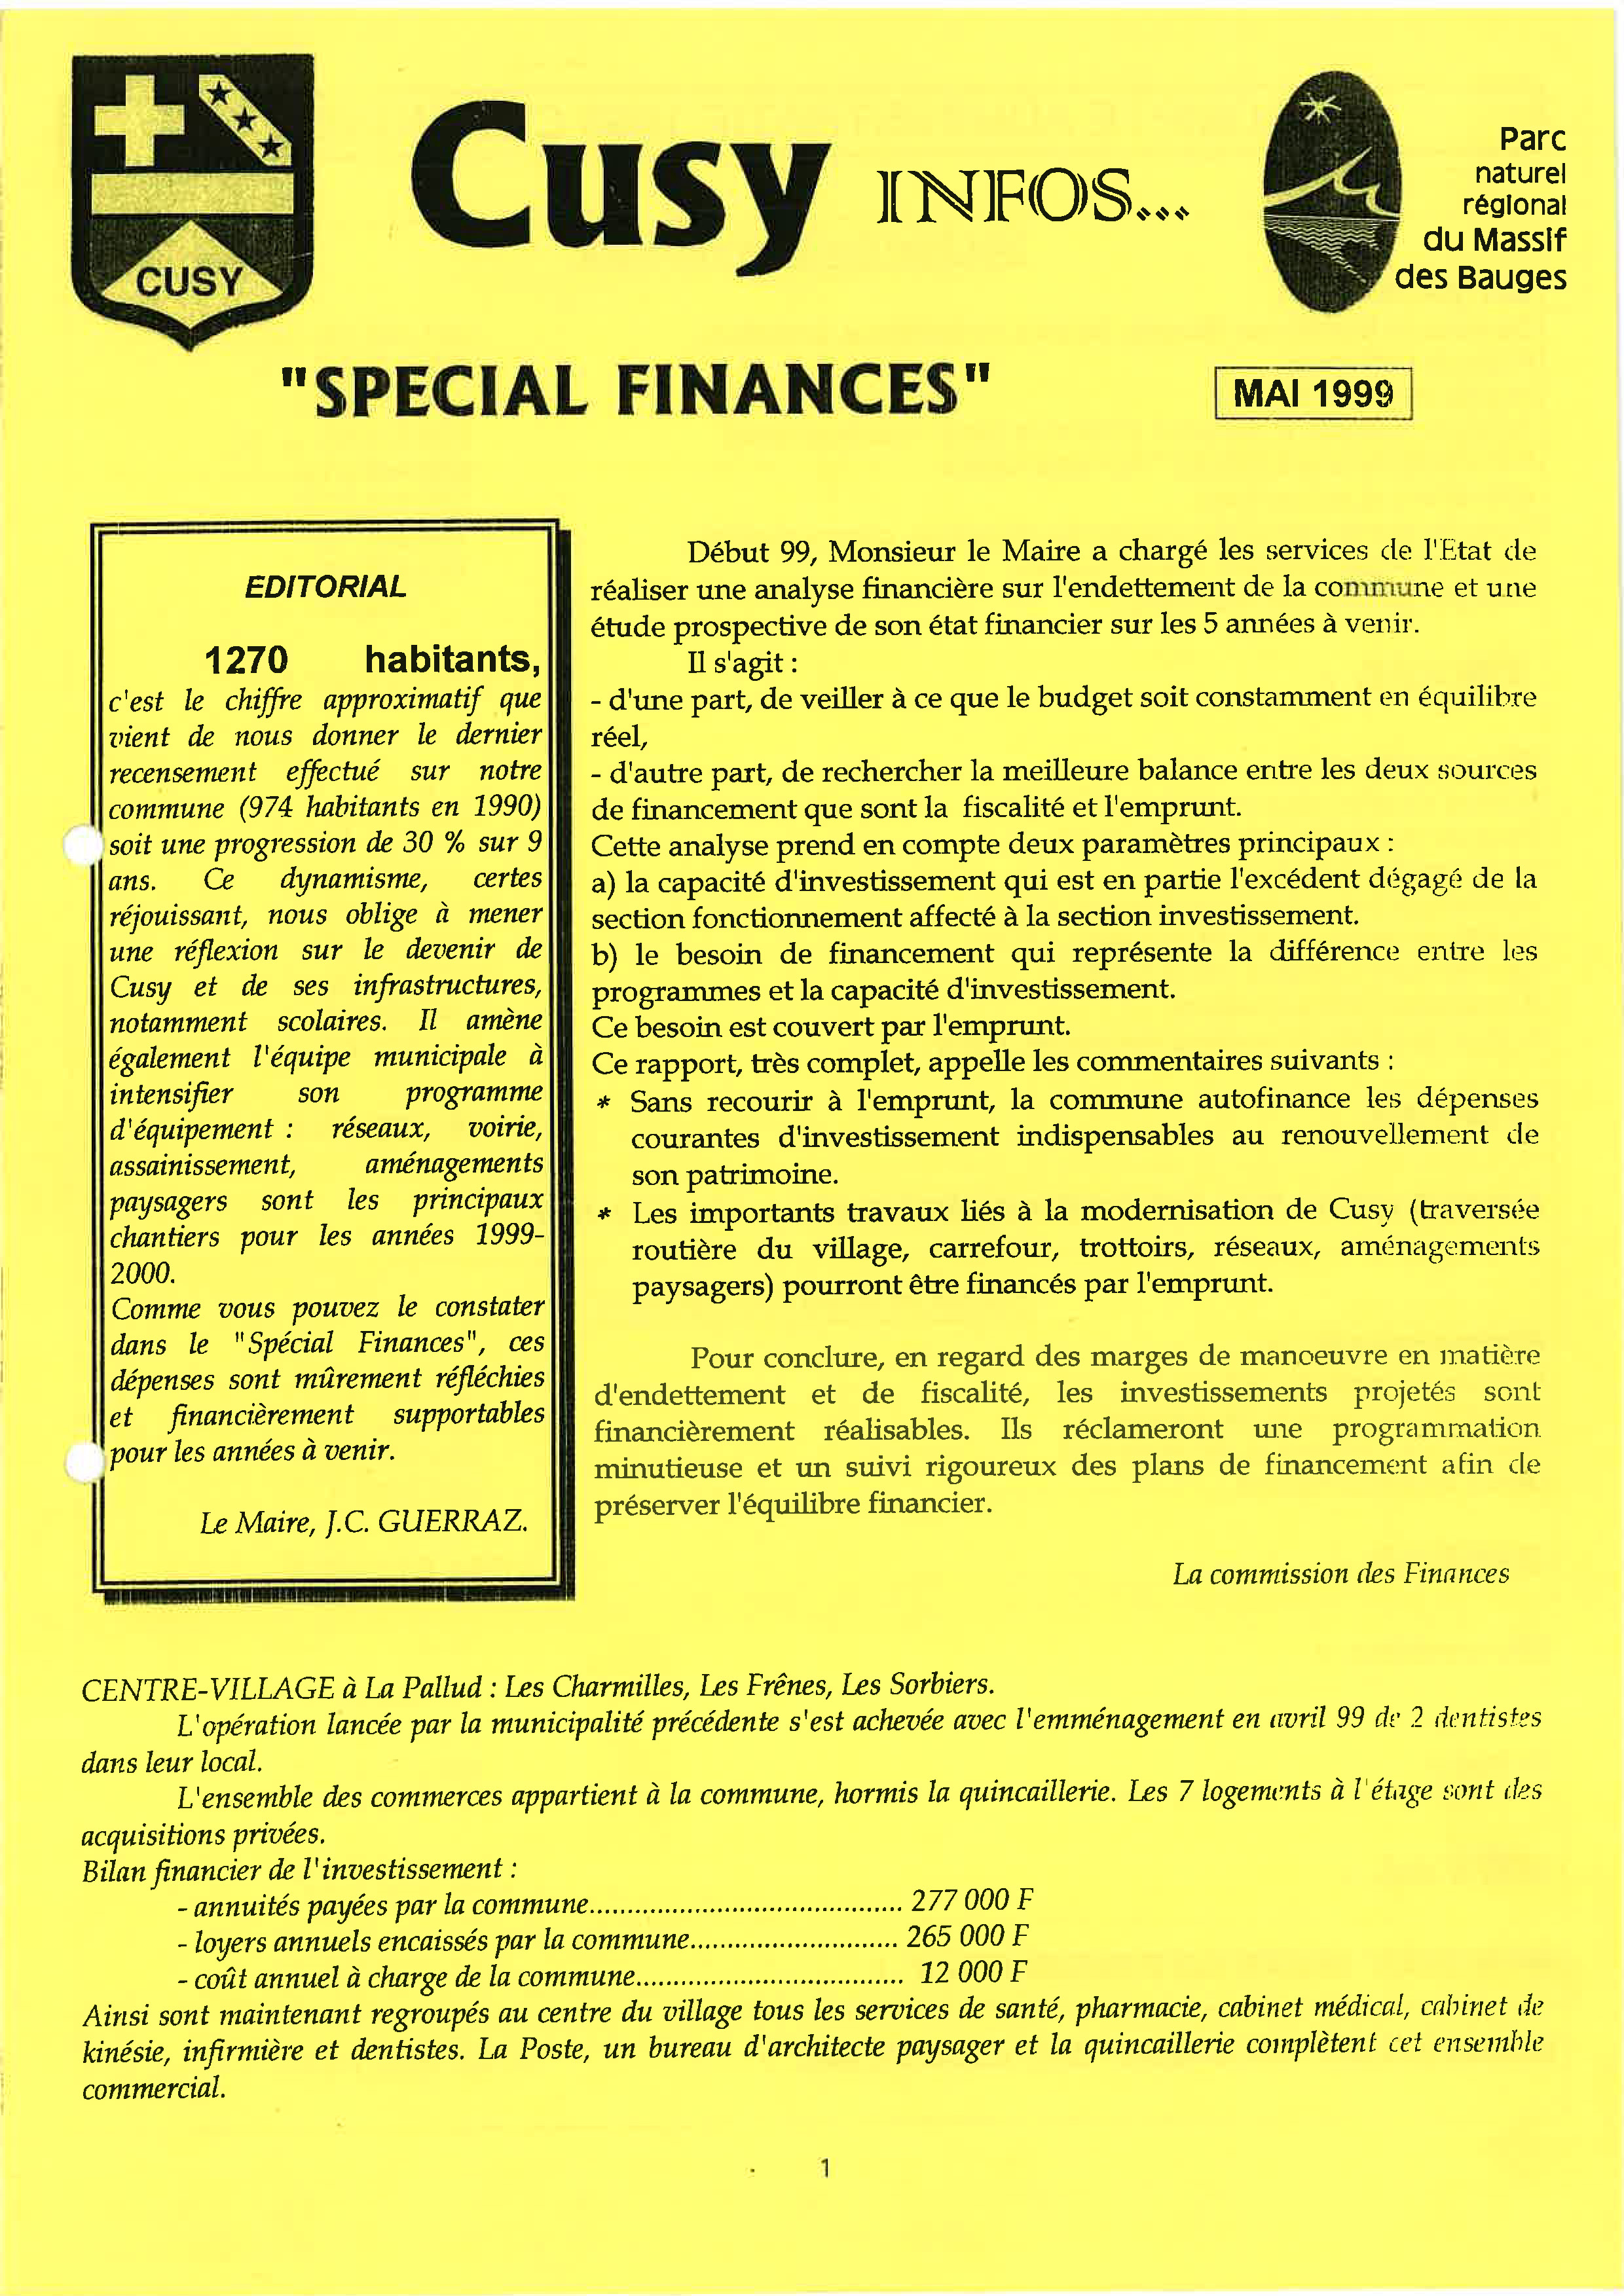 1999 05 Cusy Infos spécial finances_Page_1.jpg